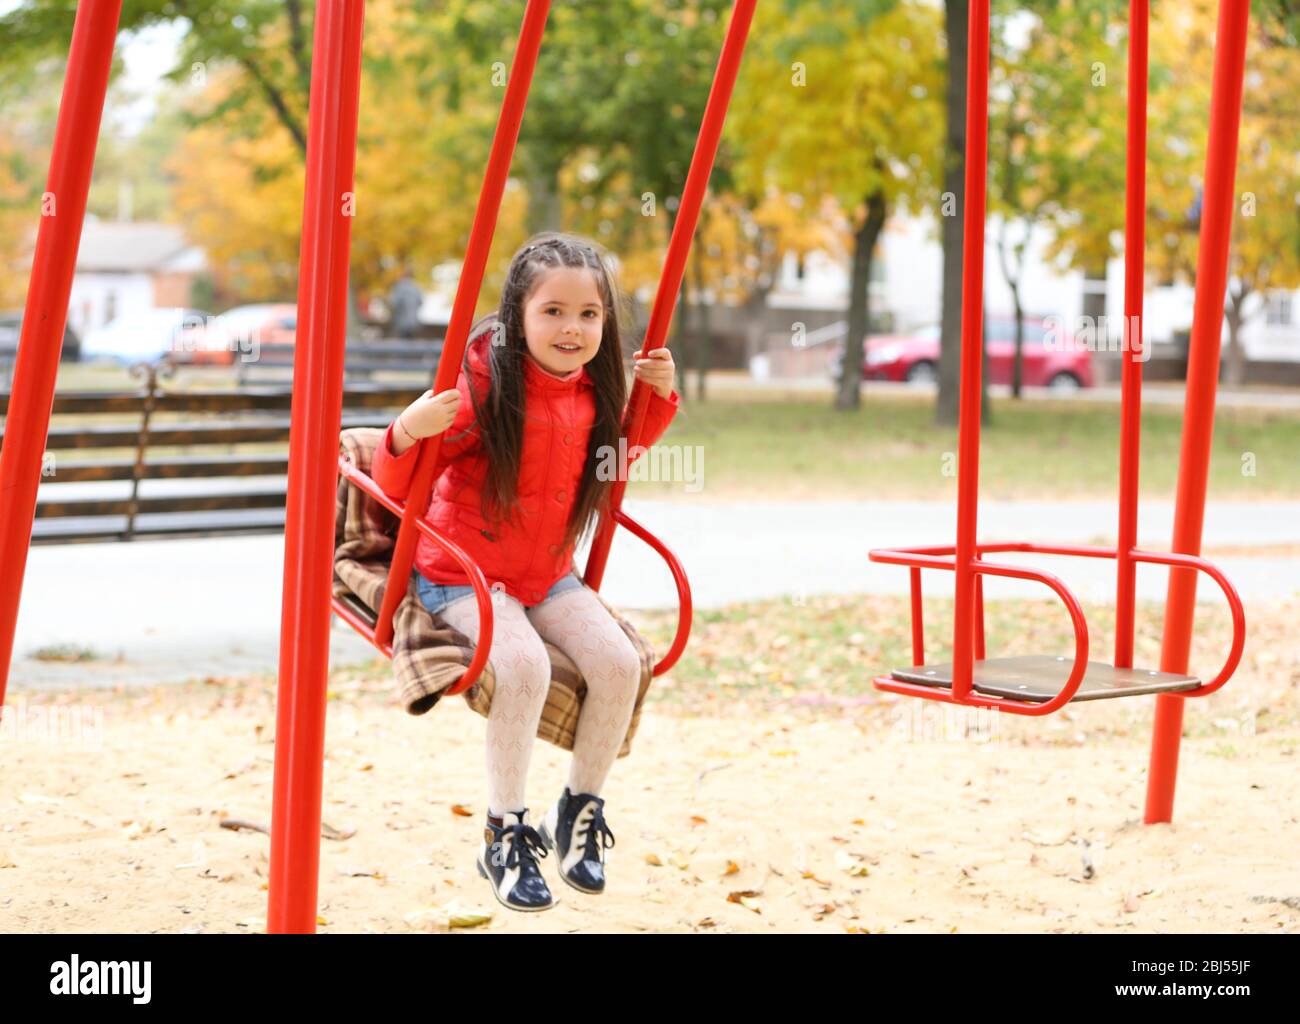 Little girl on swing in city park Stock Photo